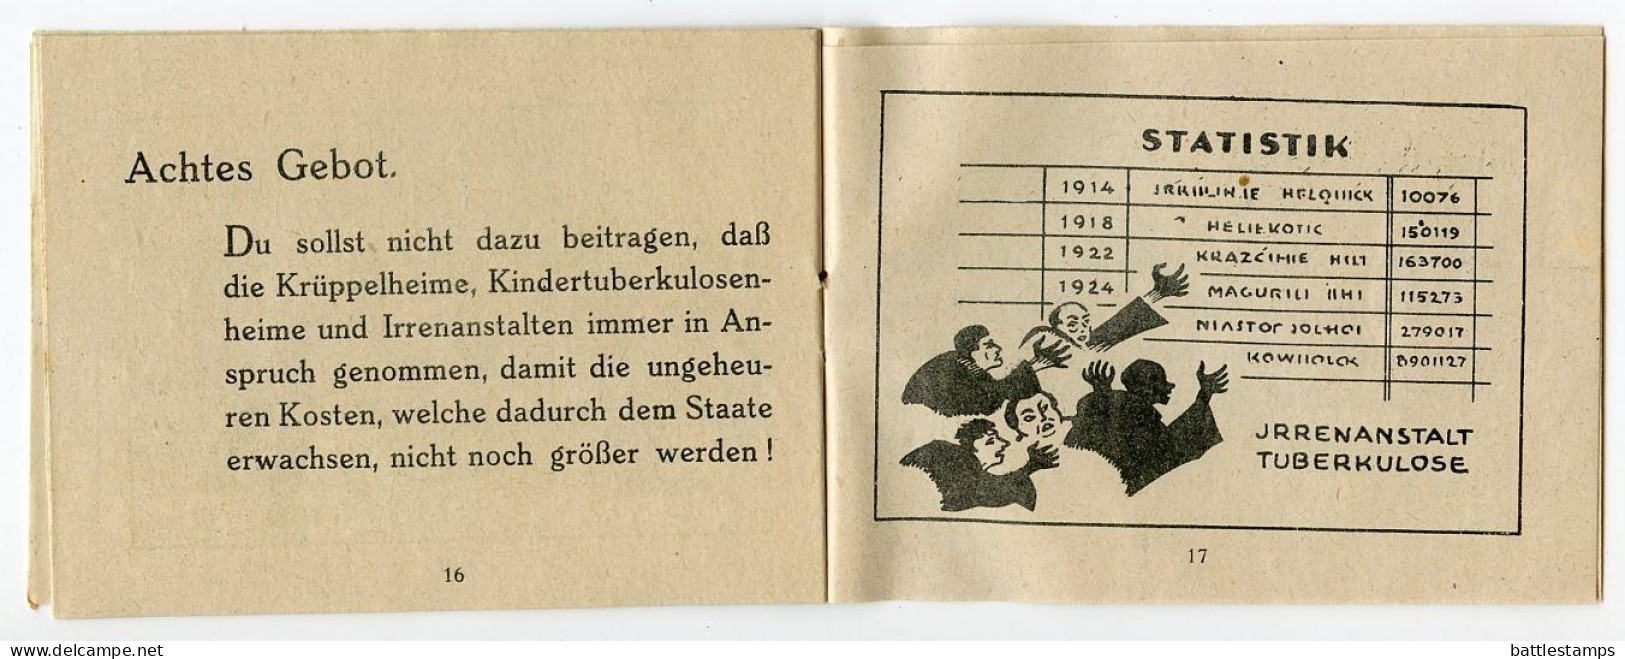 Germany 1928 Cover & Booklet (Die zehn Gebote der ehelichen Moral); Hamburg - Chem. pharm. Laboratorium; 5pf. Schiller